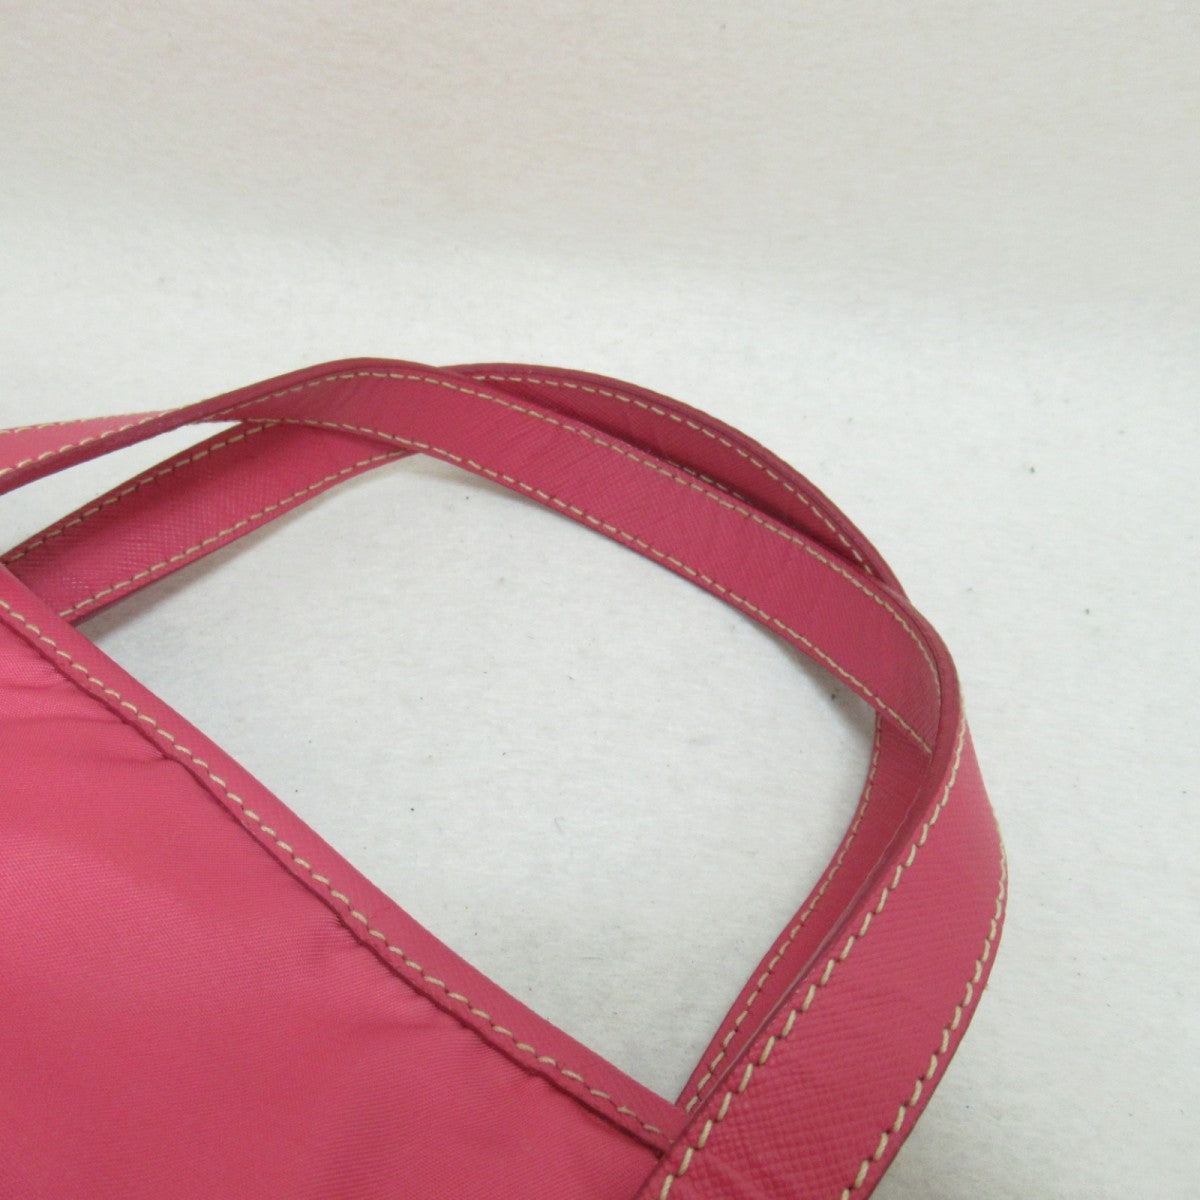 Beijo, Bags, Beijo Handbag Breast Cancer Awareness Pink Patent Leather